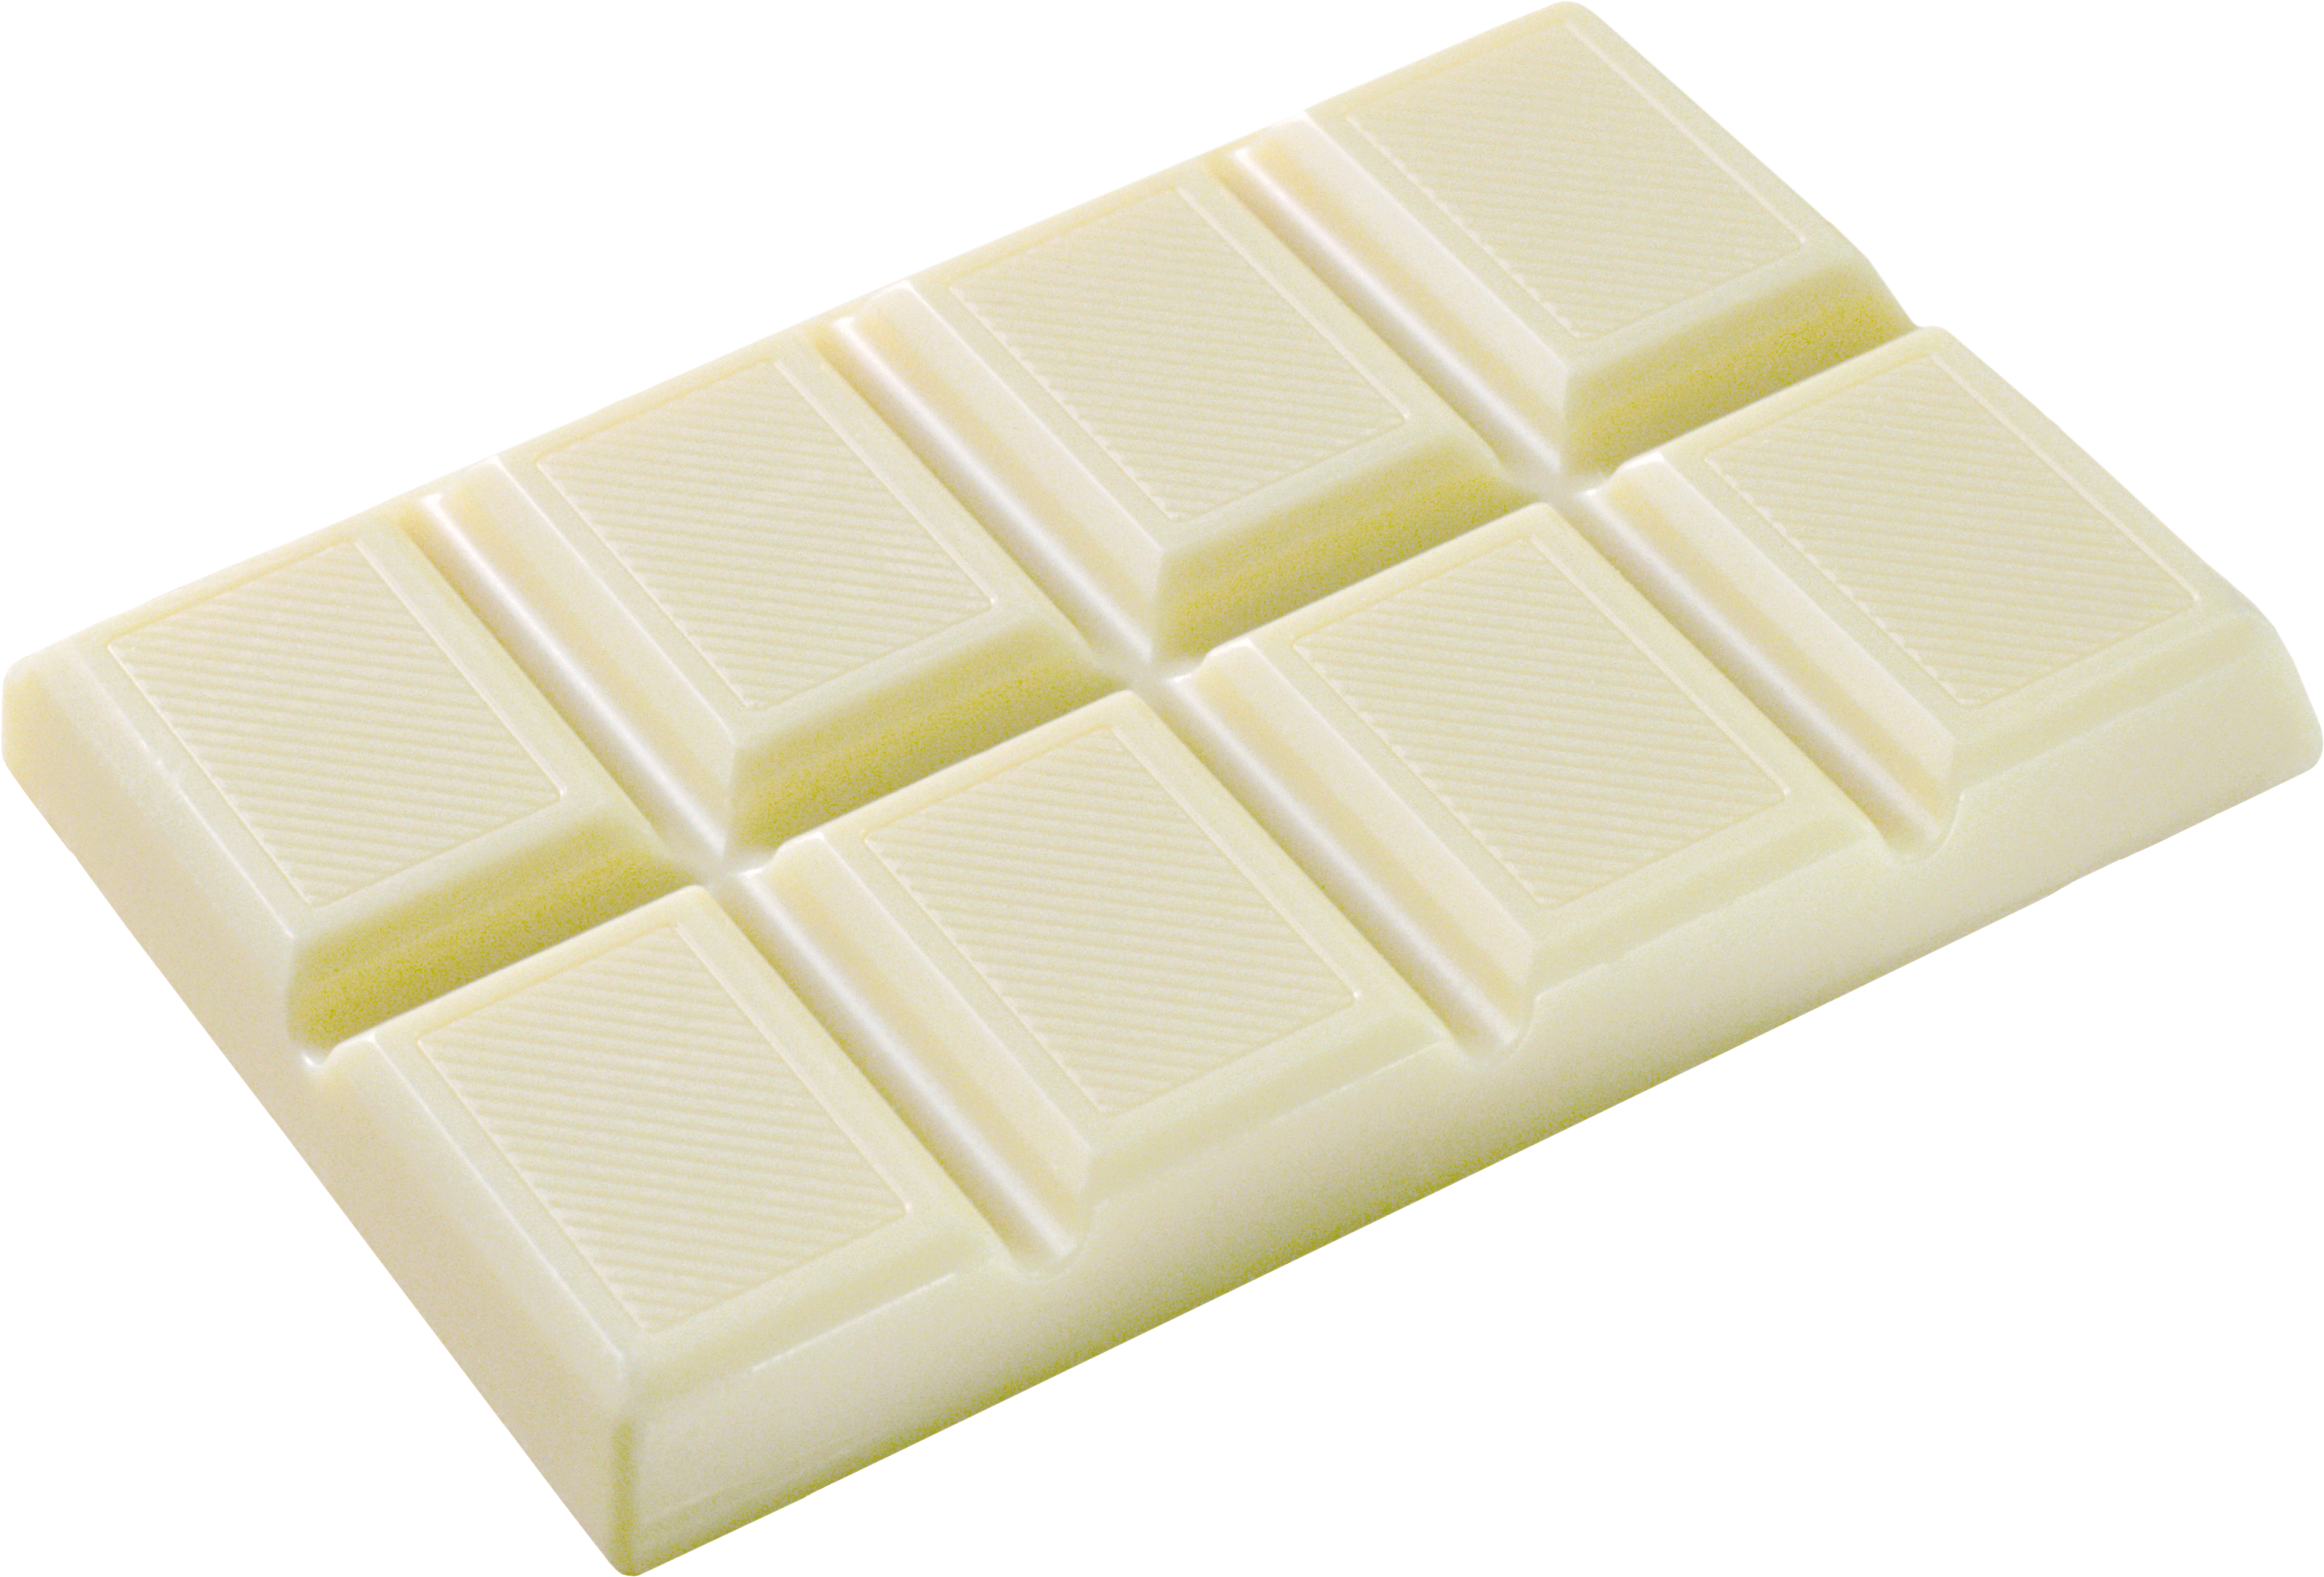 सफेद चॉकलेट